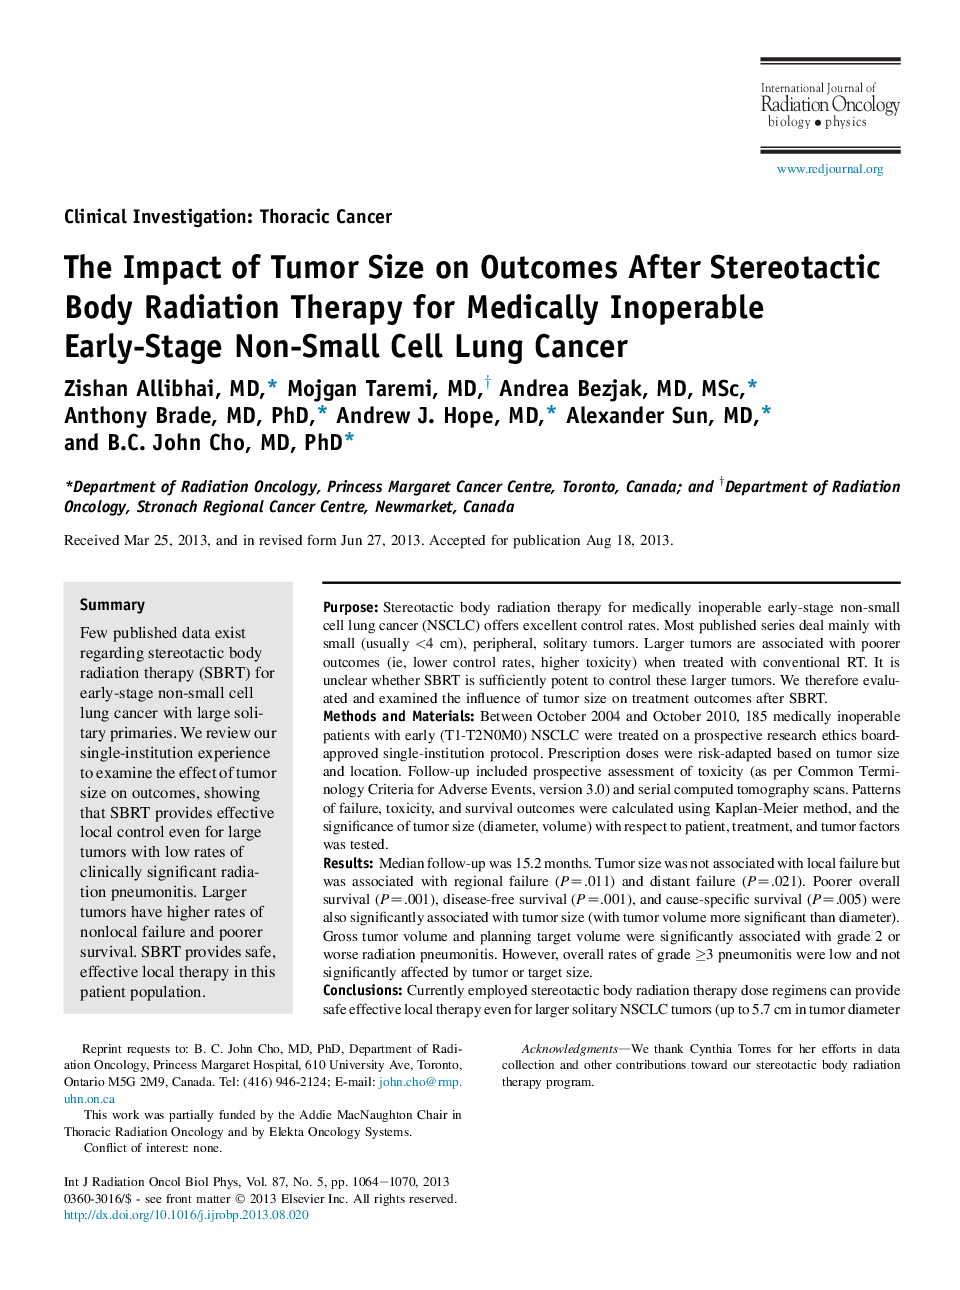 تاثیر اندازه تومور بر نتایج بعد از درمان رادیوتراپی بدن استریوتاکتیک برای سرطان ریه های غیر سلولی غیر اولیه 